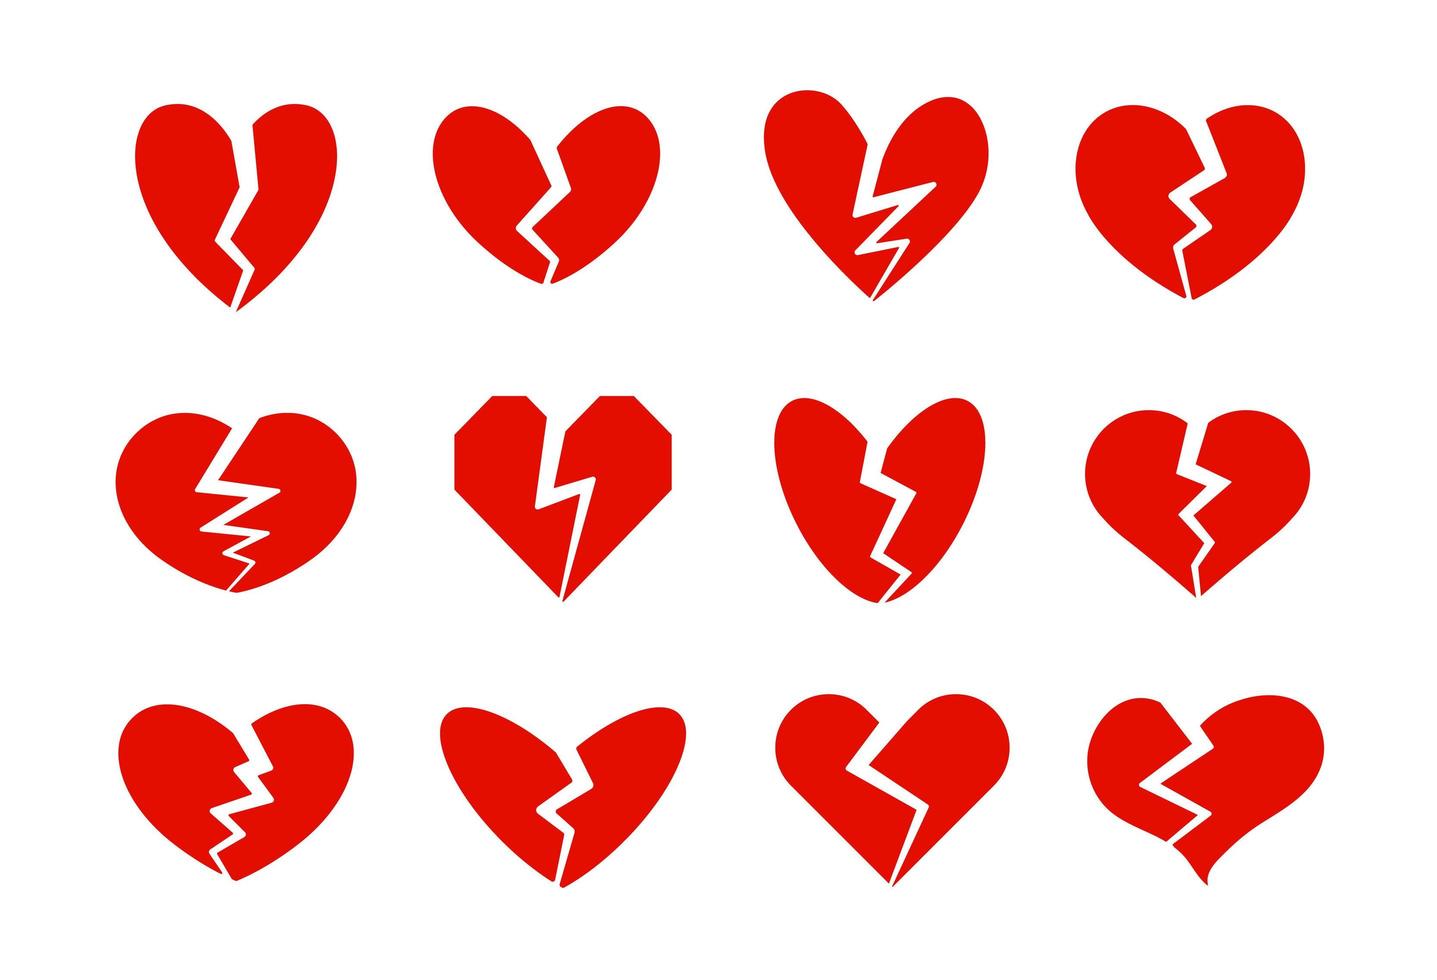 collezione di icone di cuori spezzati, crepa del cuore, simbolo di disamore. divorzio, crisi relazionale, segni di problemi familiari. icone vettoriali rosse impostate su sfondo bianco.